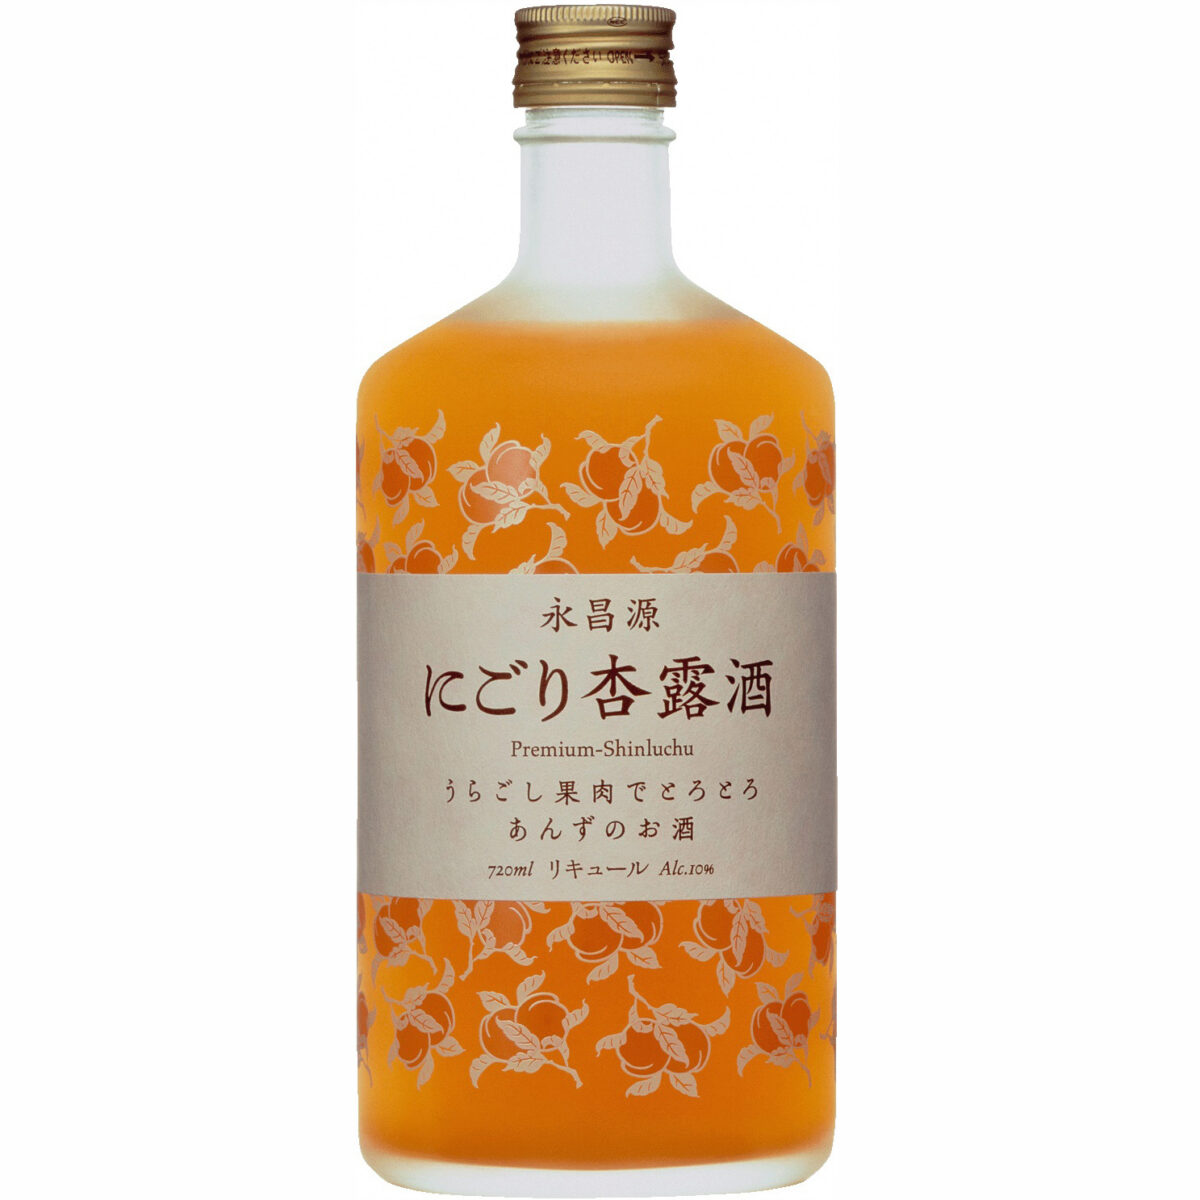 キリン にごり杏露酒(あんず・シンルチュウ) 720mlの返納品画像イメージ